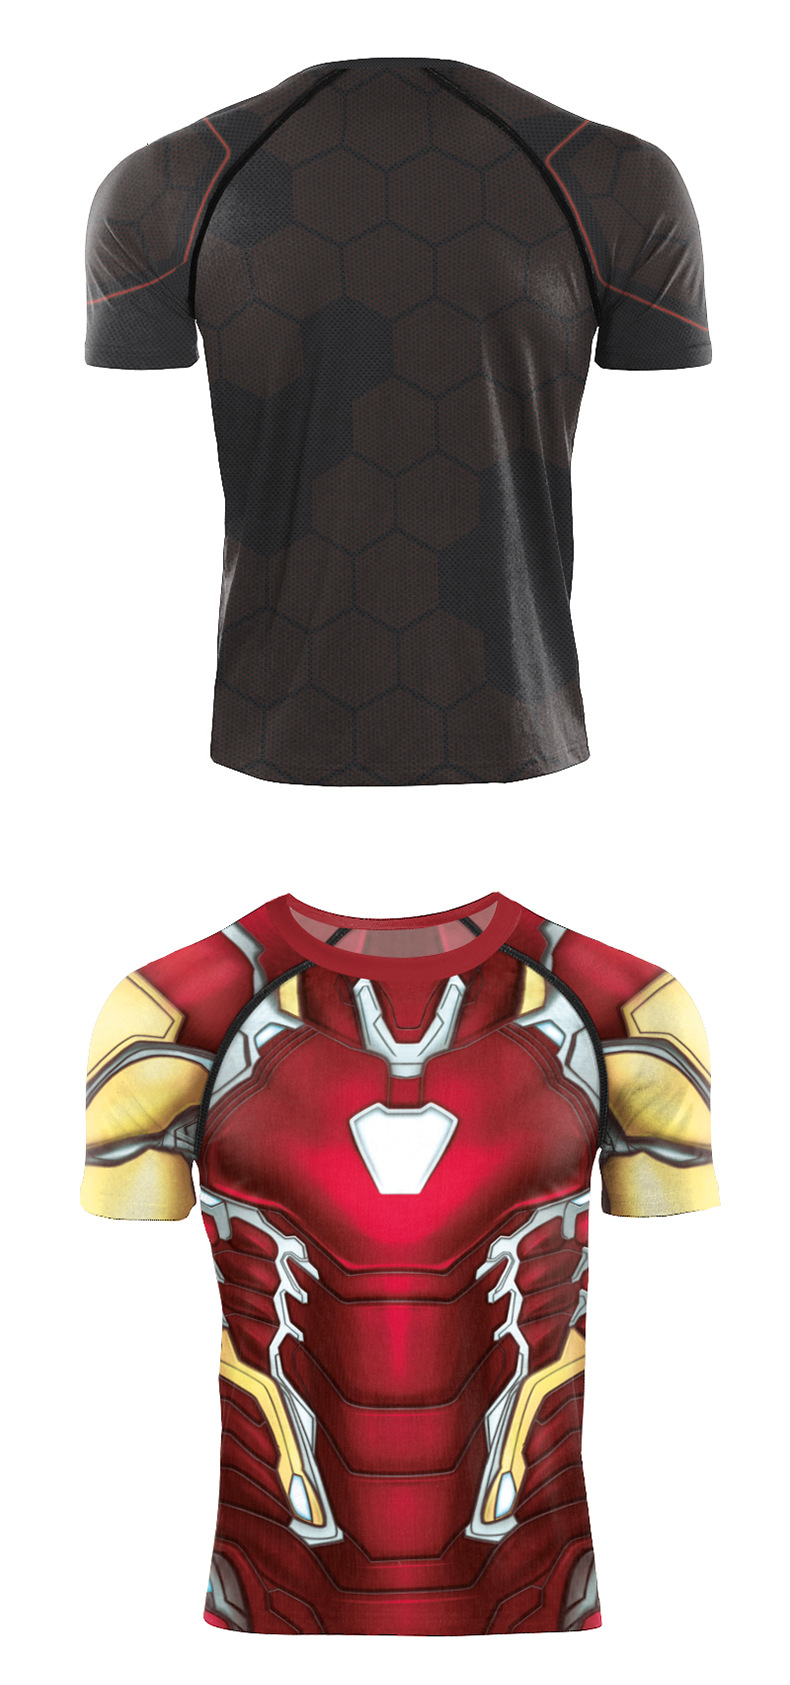 Avenger Iron Man short sleeve costume t shirt for cosplay